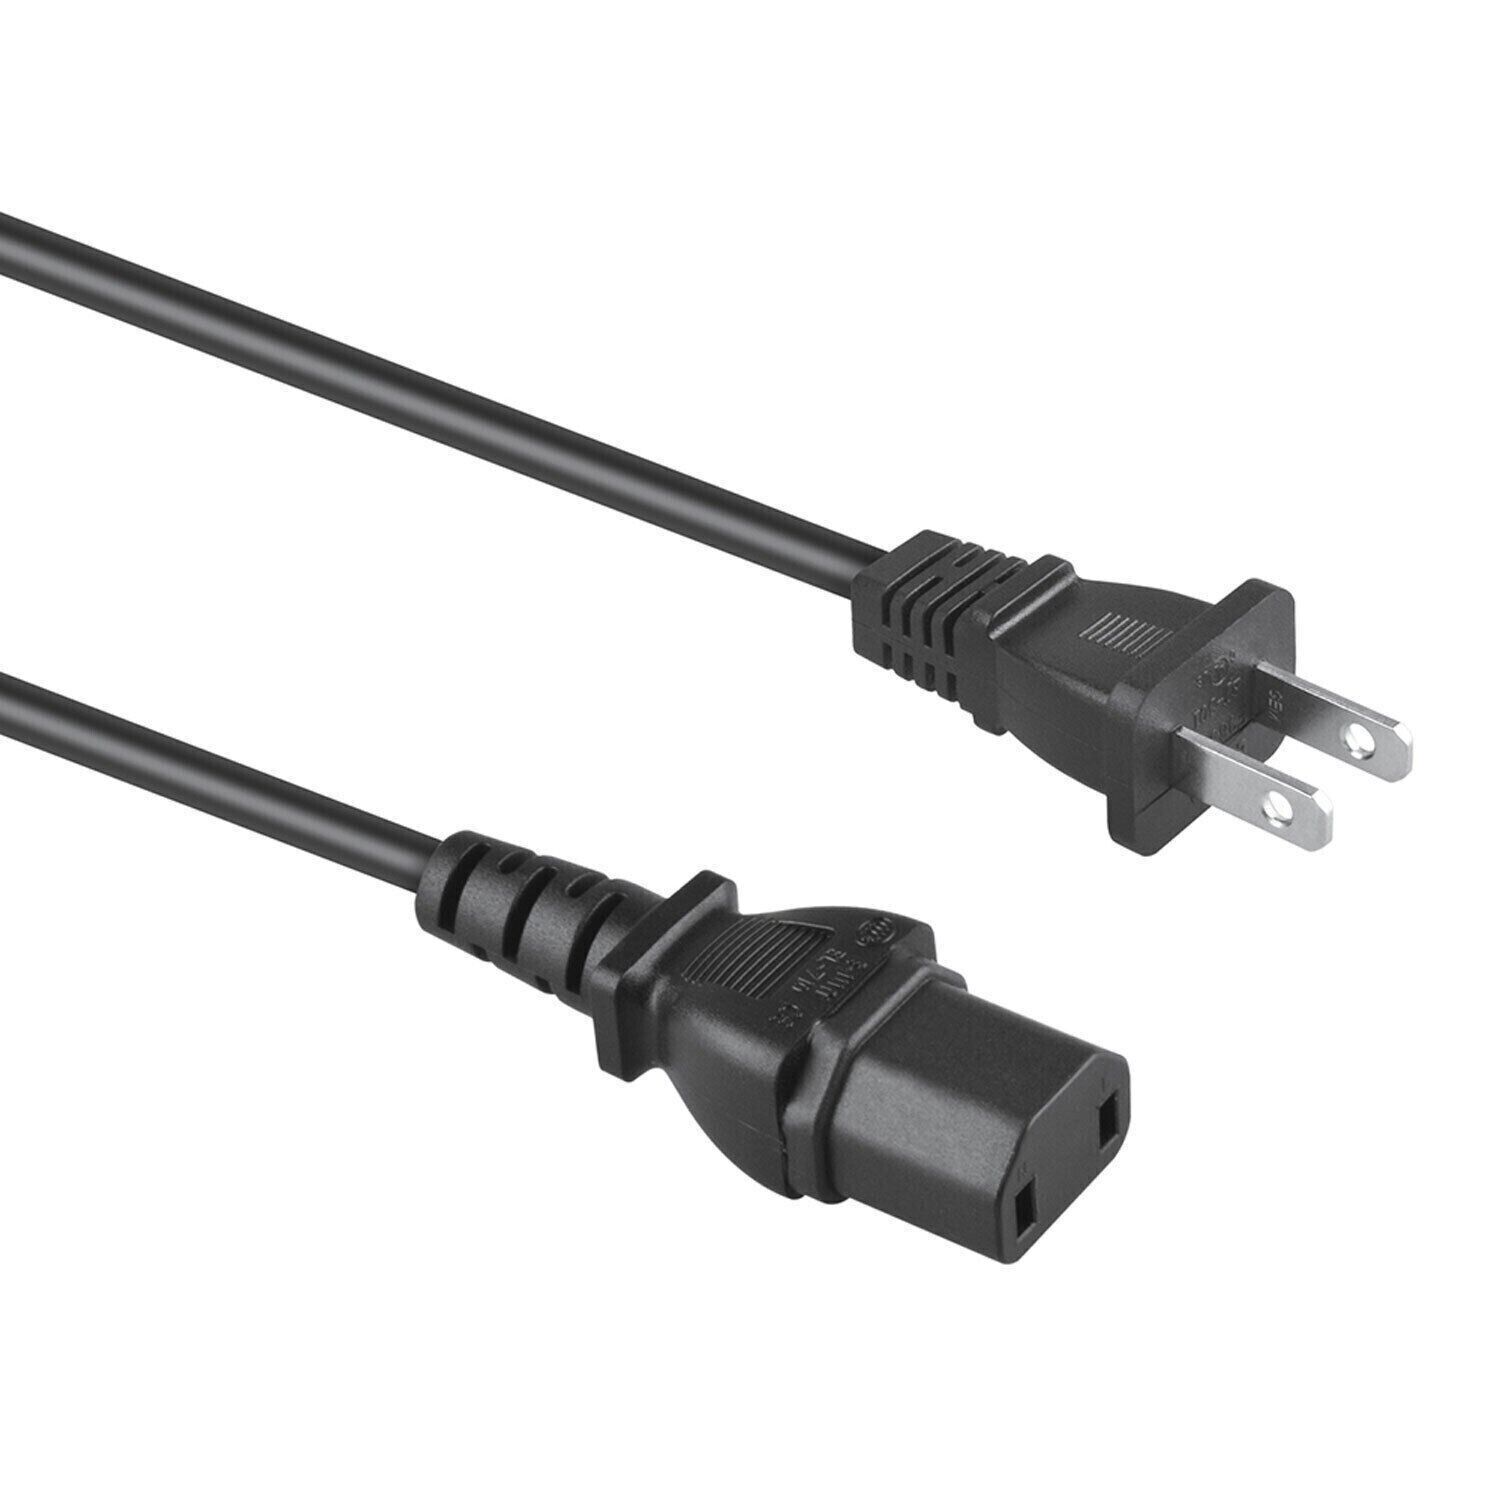 New AC in Power Cord Mains Cable for Marantz NR SR ZR Series AV Surround Receiver NR1603 NR1402 NR1403 NR1501 NR1504 NR1601 NR1602 NR1604 NR1605 SR4001 SR4002 SR4003 SR4021 SR4600 SR5001 - image 3 of 3